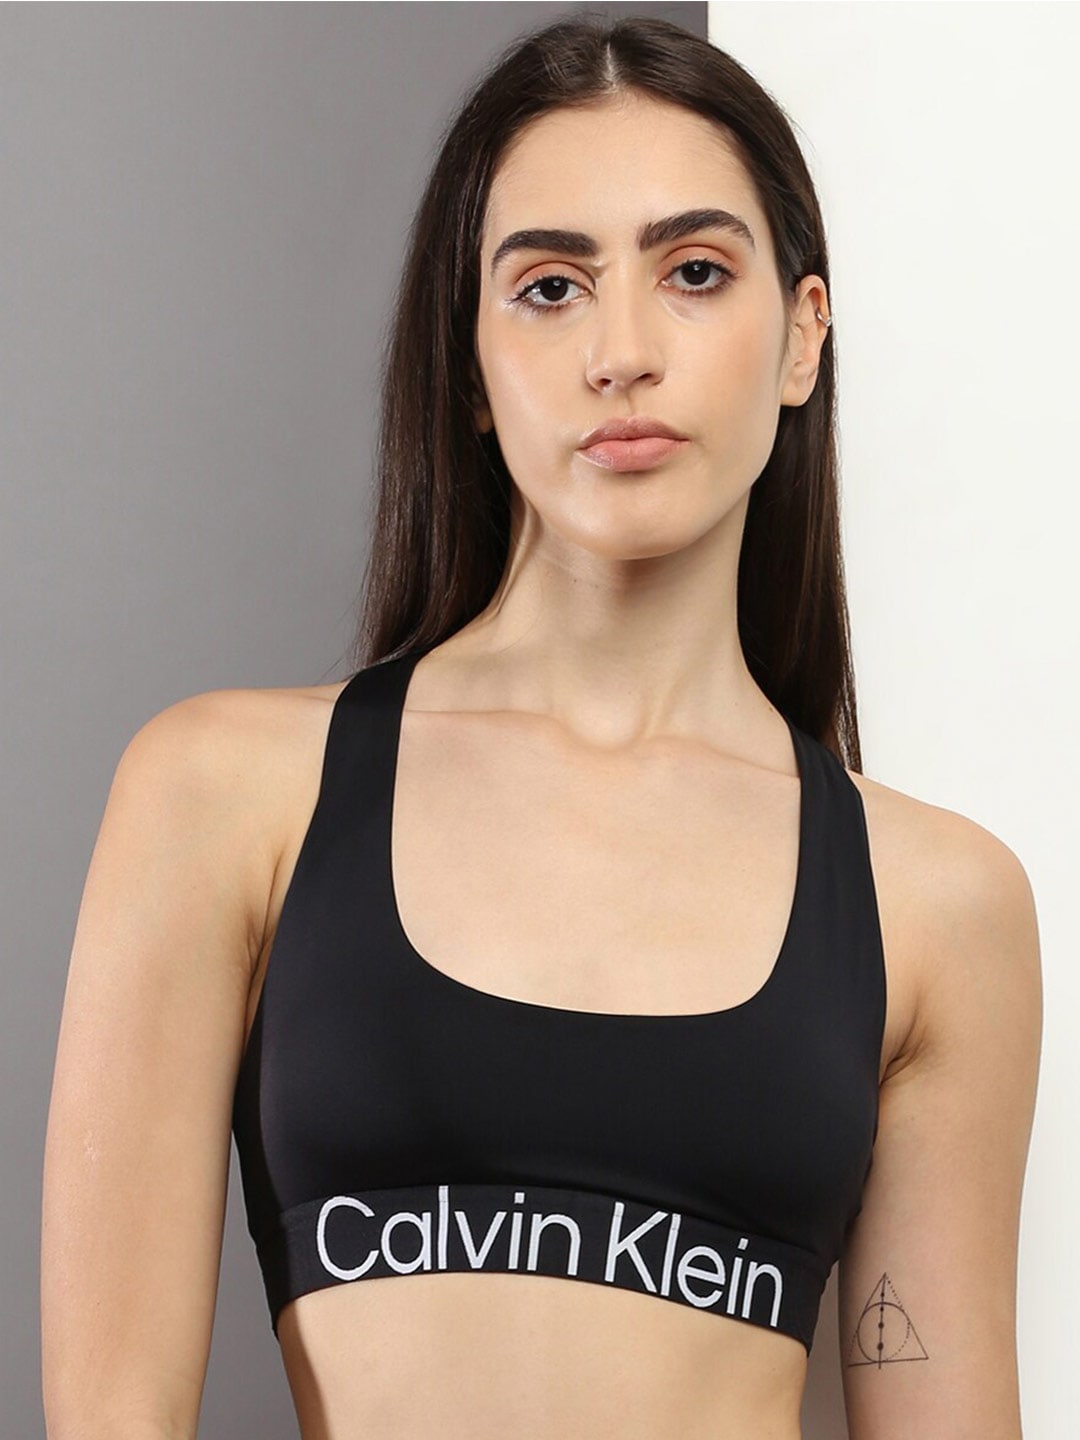 Buy Calvin Klein Innerwear Bra Online In India